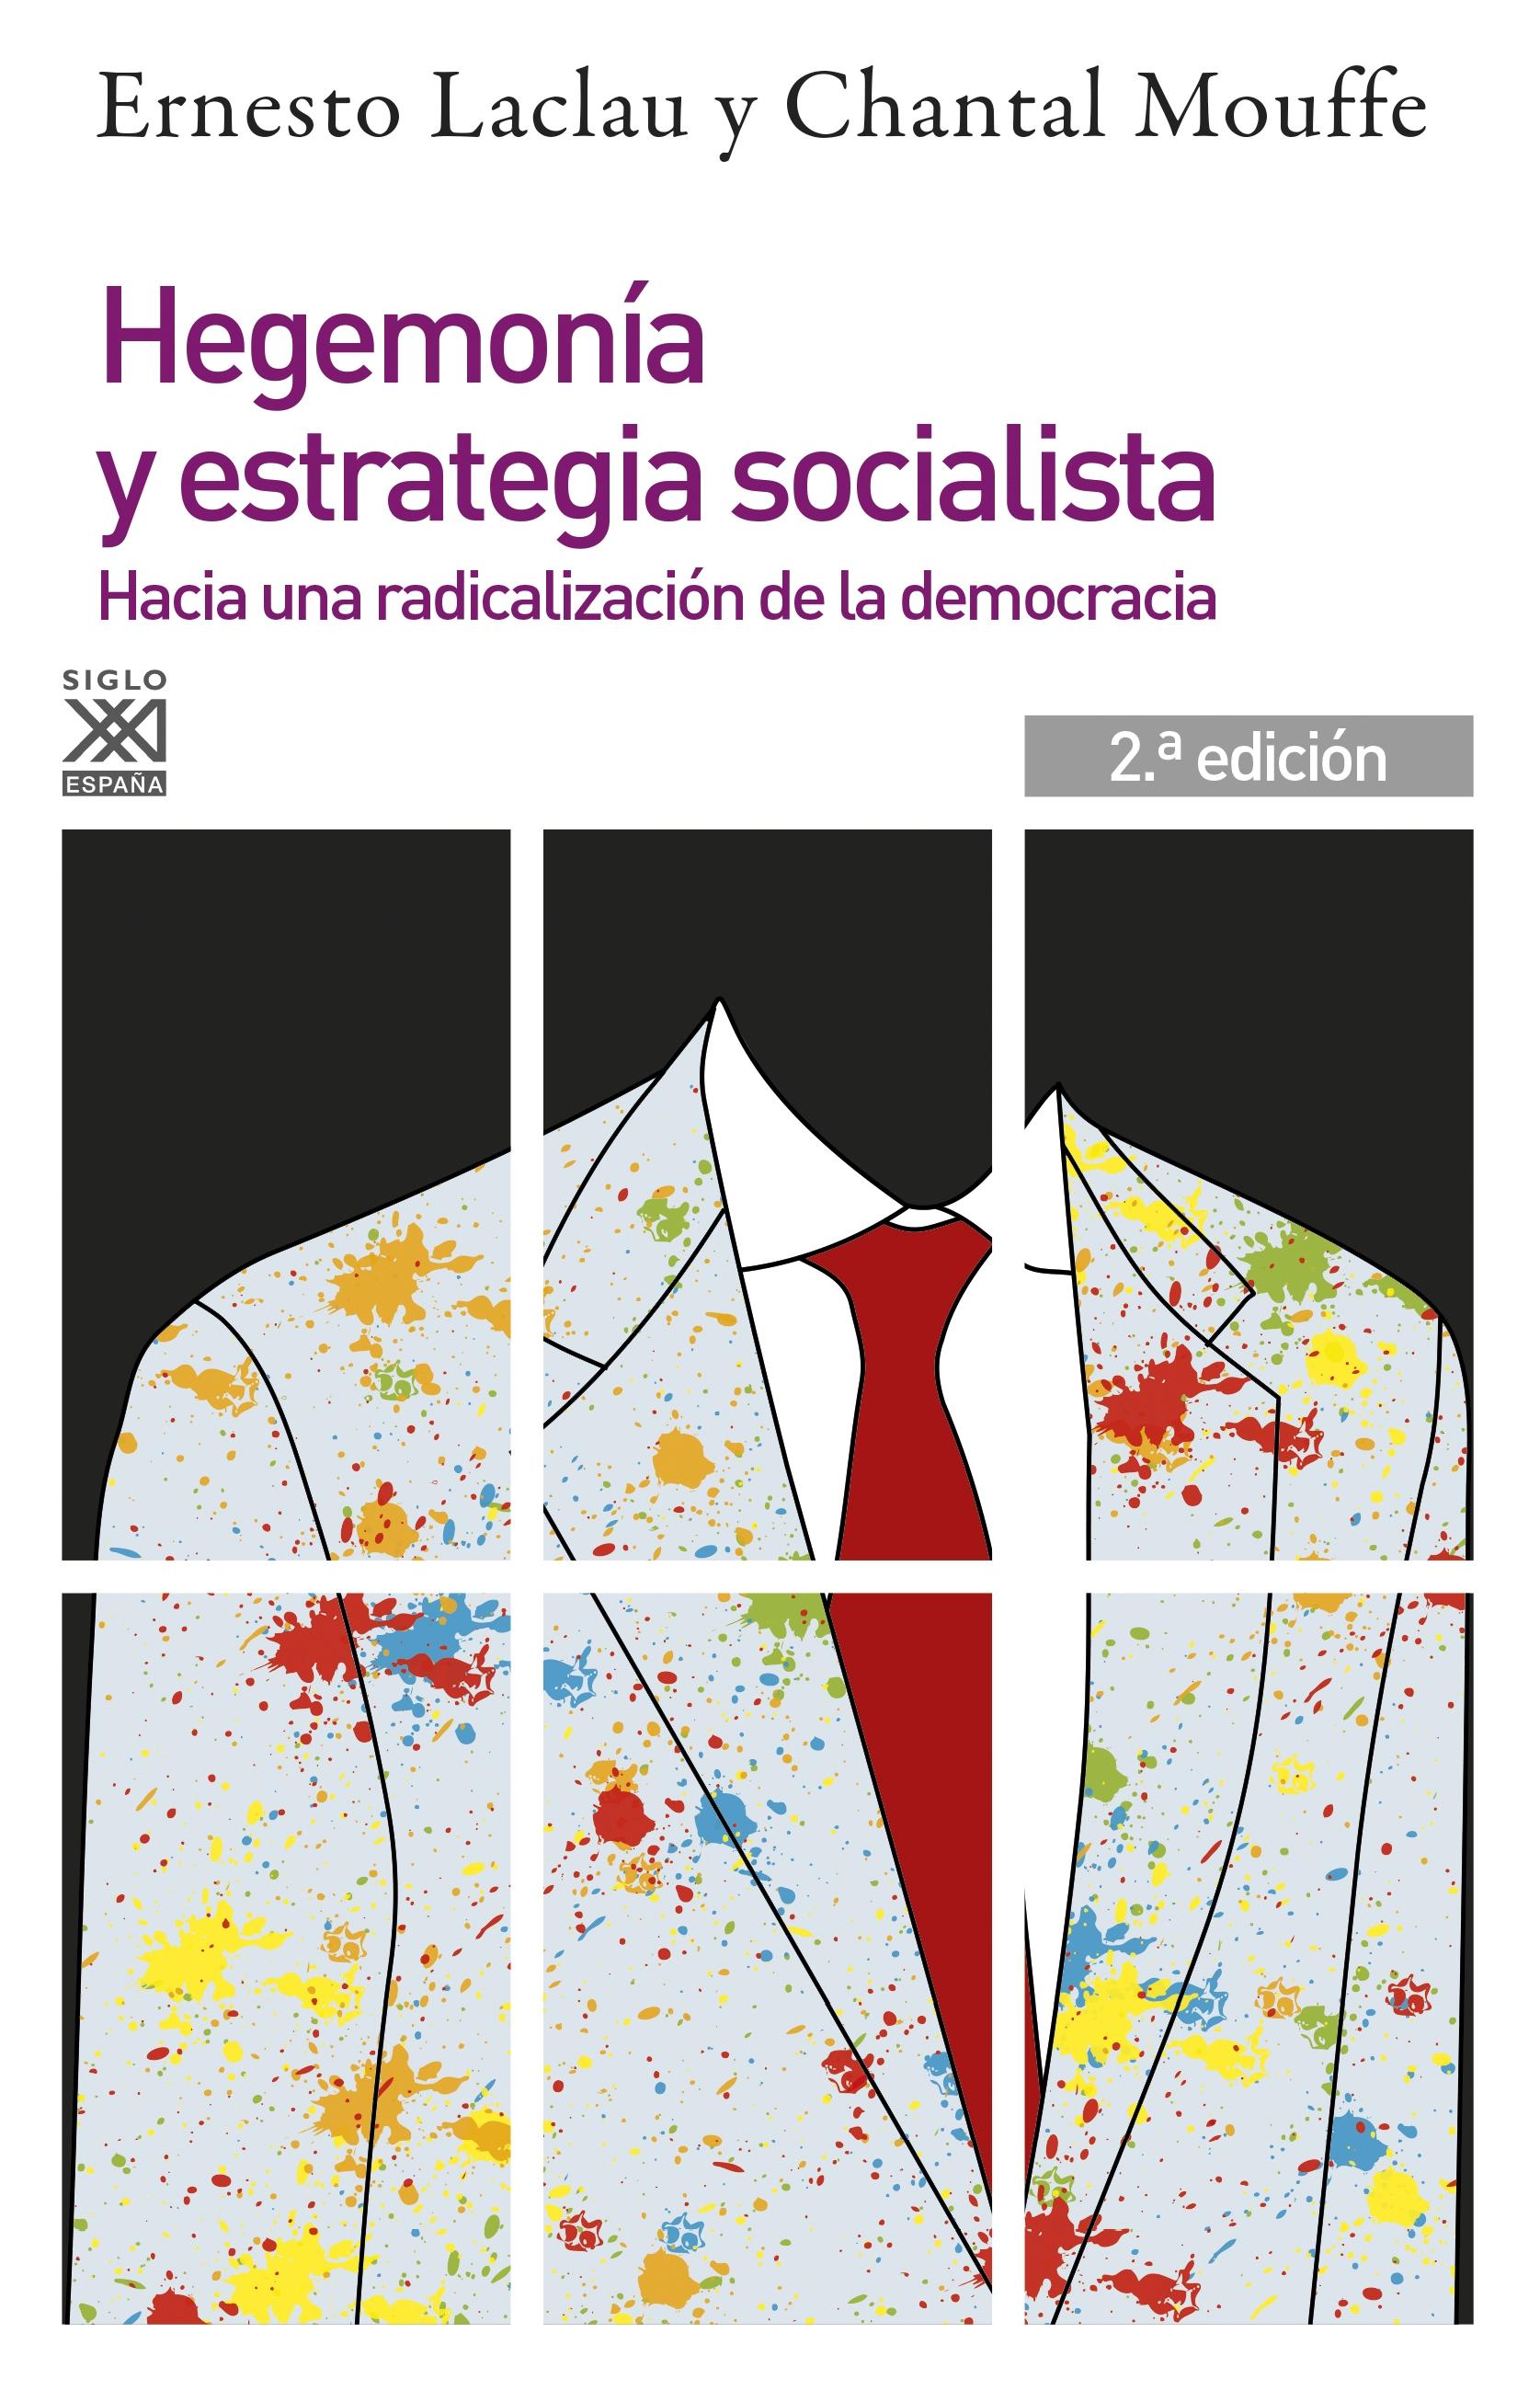 Hegemonia y estrategia socialista "Hacia una radicalización de la democracia". 